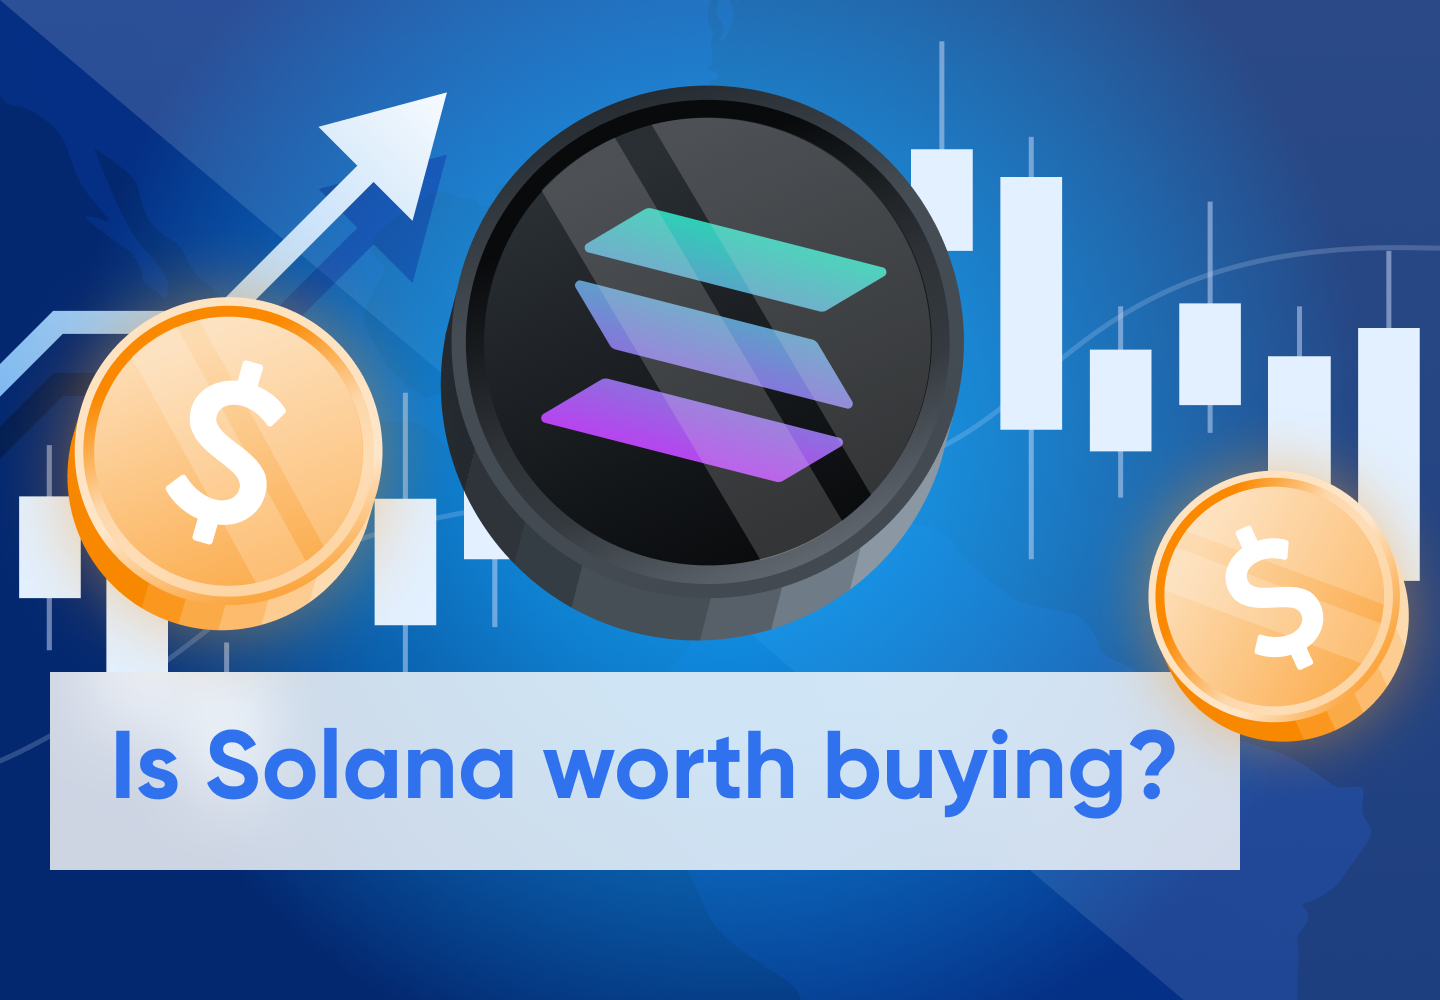 Solana (SOL) Price Prediction for 2022